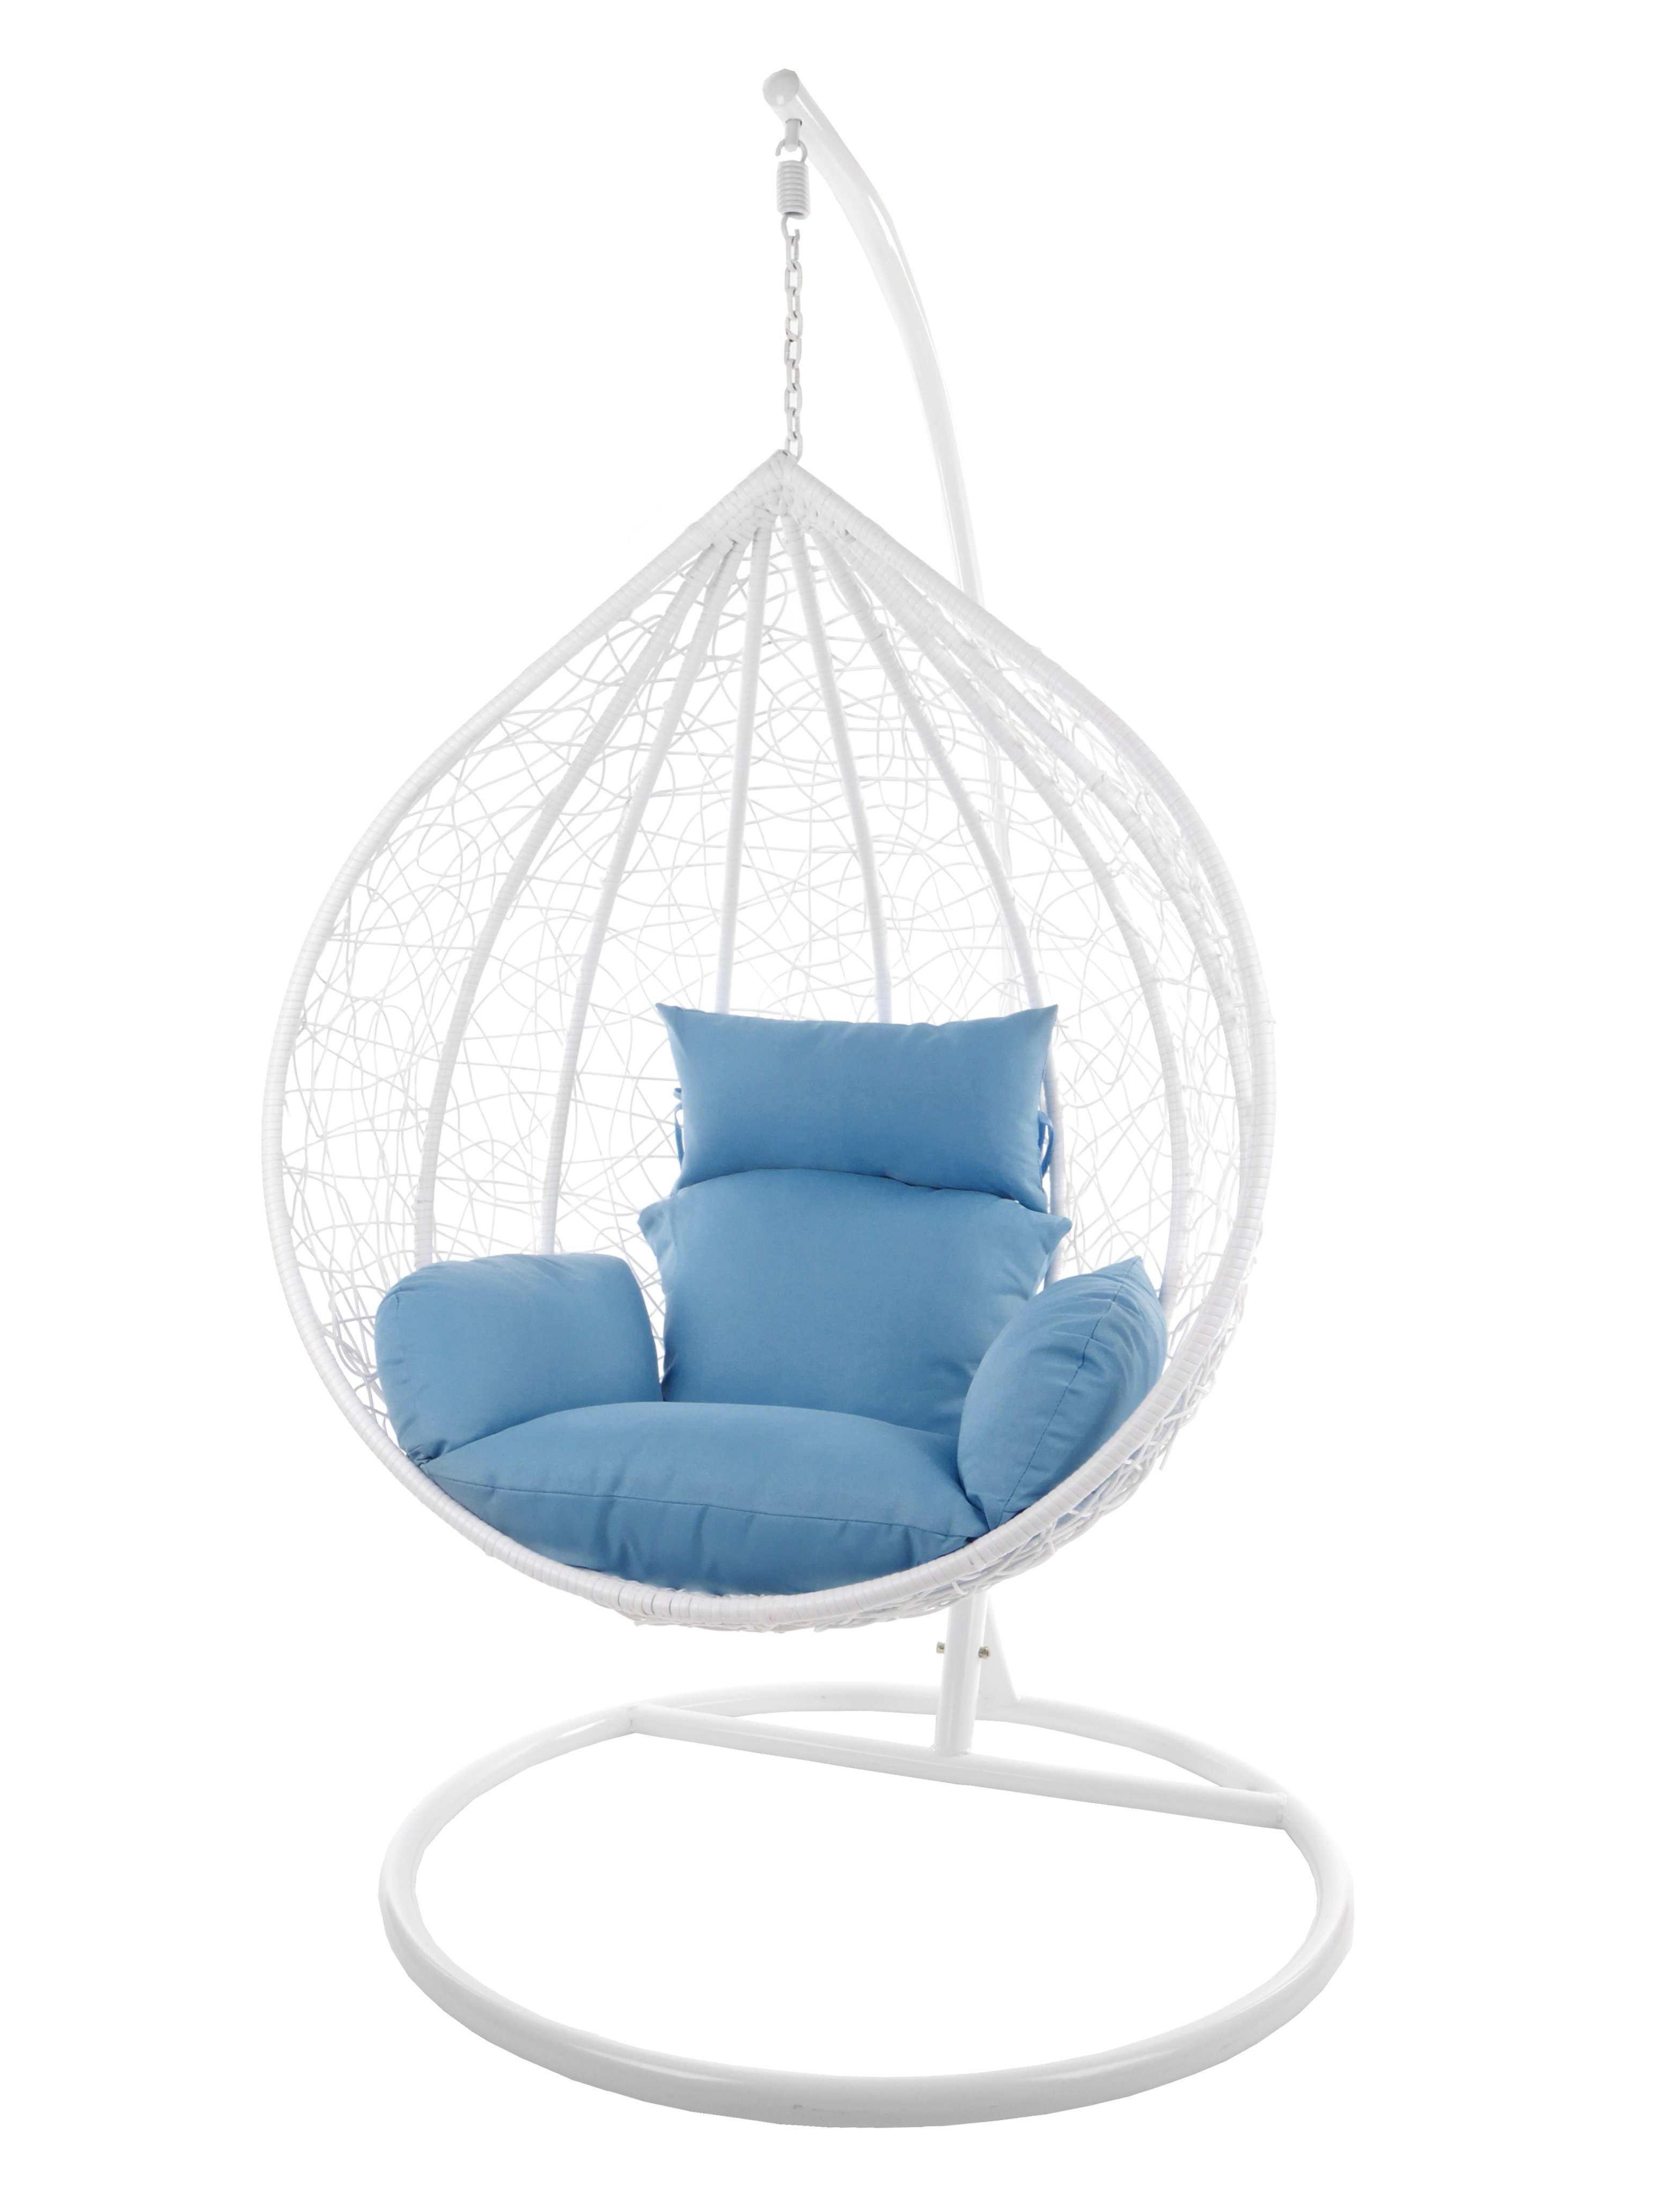 KIDEO Hängesessel Hängesessel Chair, königsblau weiß mit Loungemöbel, MANACOR Swing Kissen, (5070 und weiß, großer royalblue) XXL Gestell Hängesessel